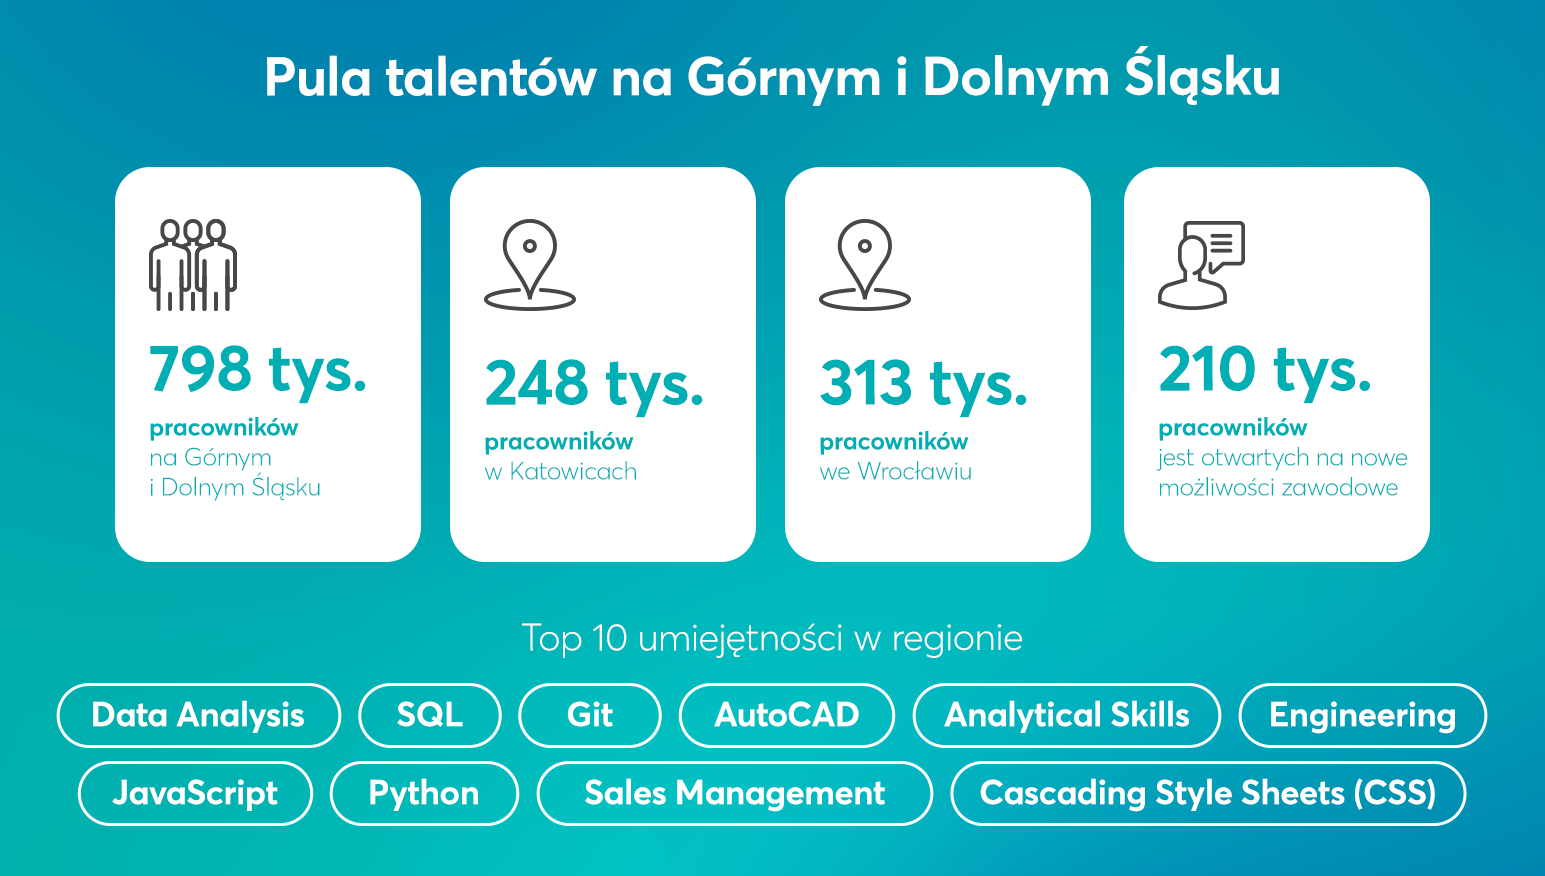 Pula talentów na Górnym i Dolnym Śląsku - infografika